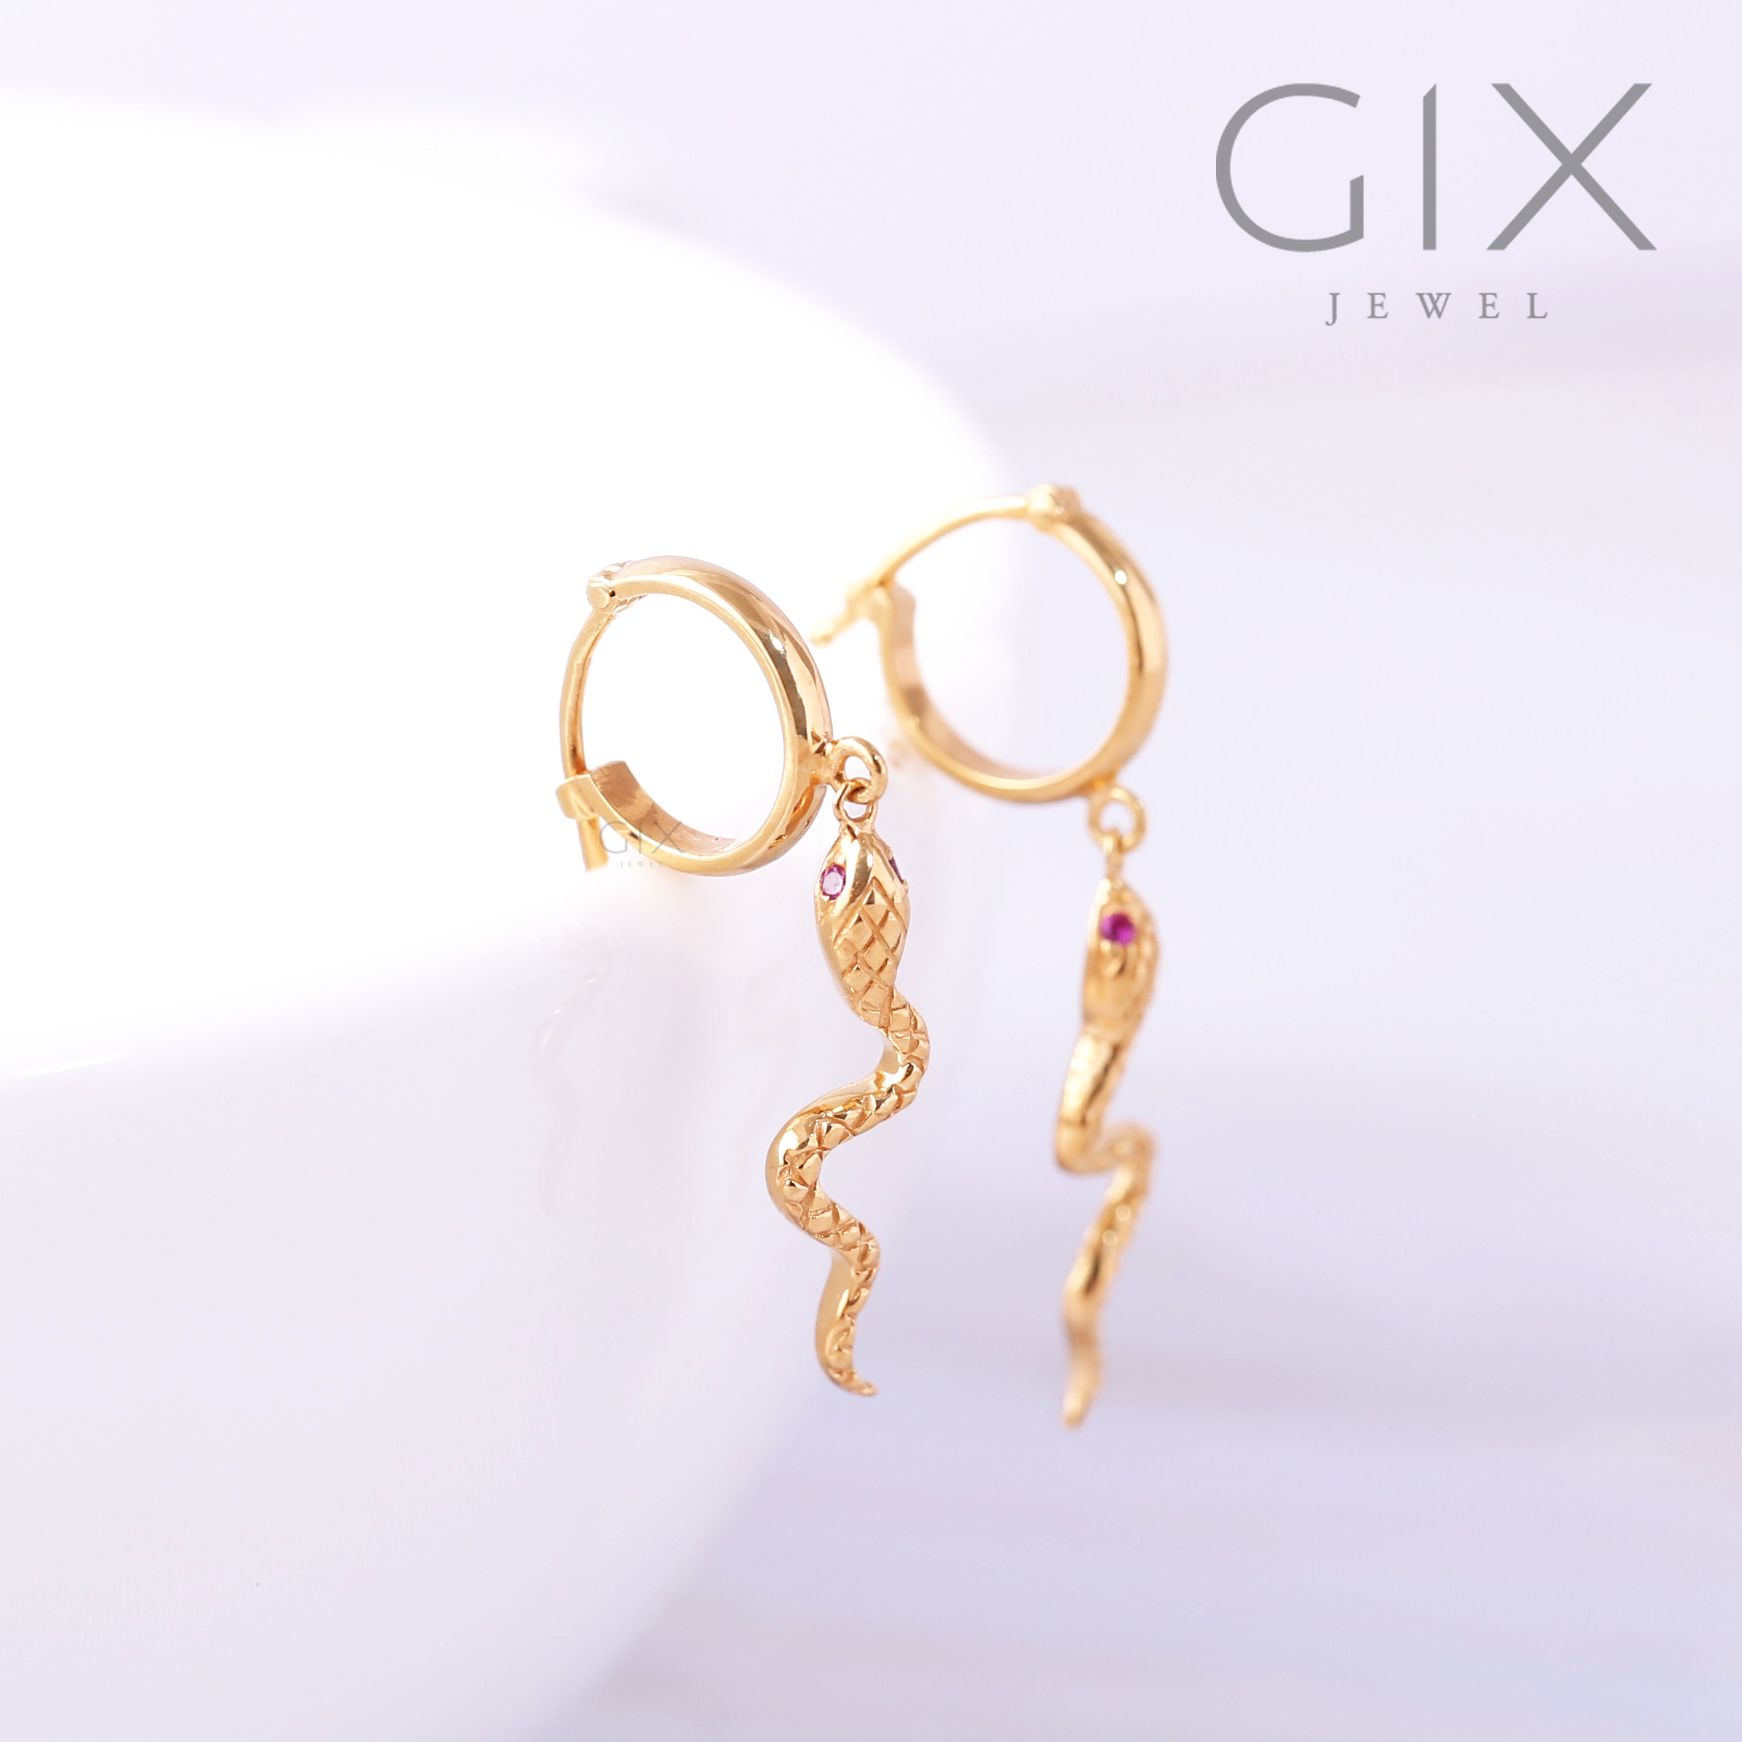  Bông tai bạc mạ vàng con rắn thiết kế độc quyền tinh xảo Gix Jewel BT08 